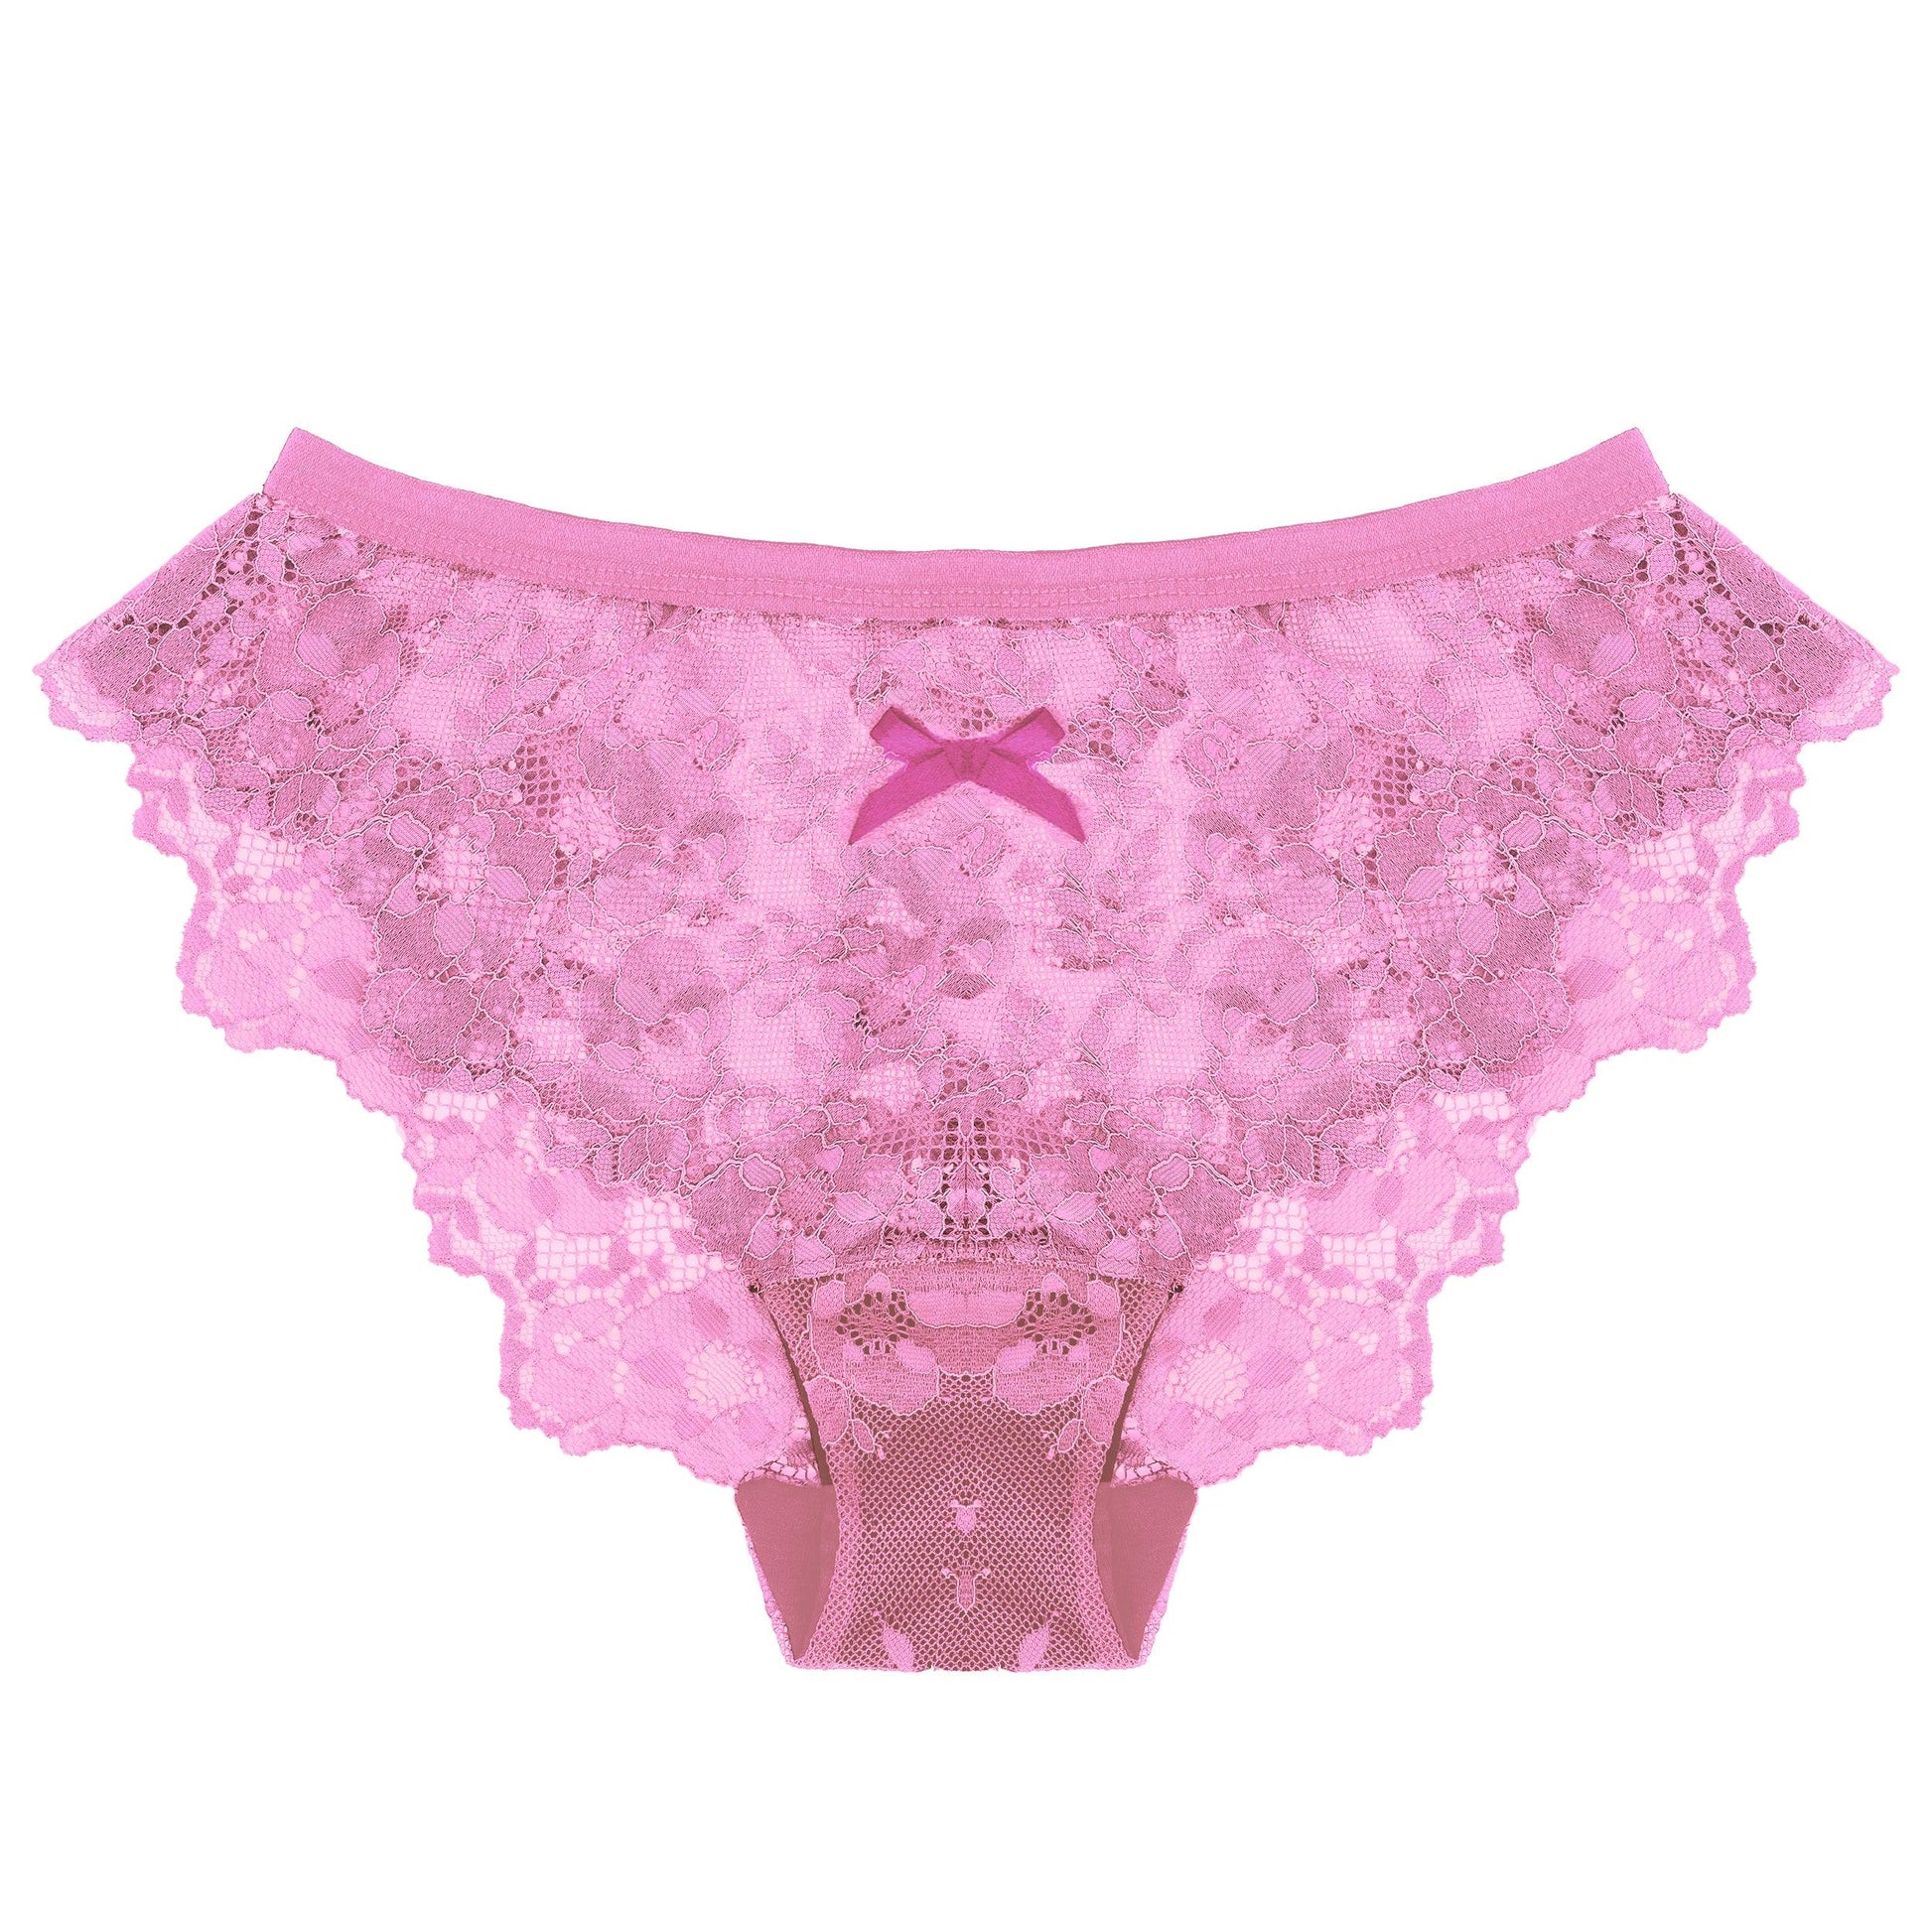 Lace Panty in Desert Rose - Takkleberry